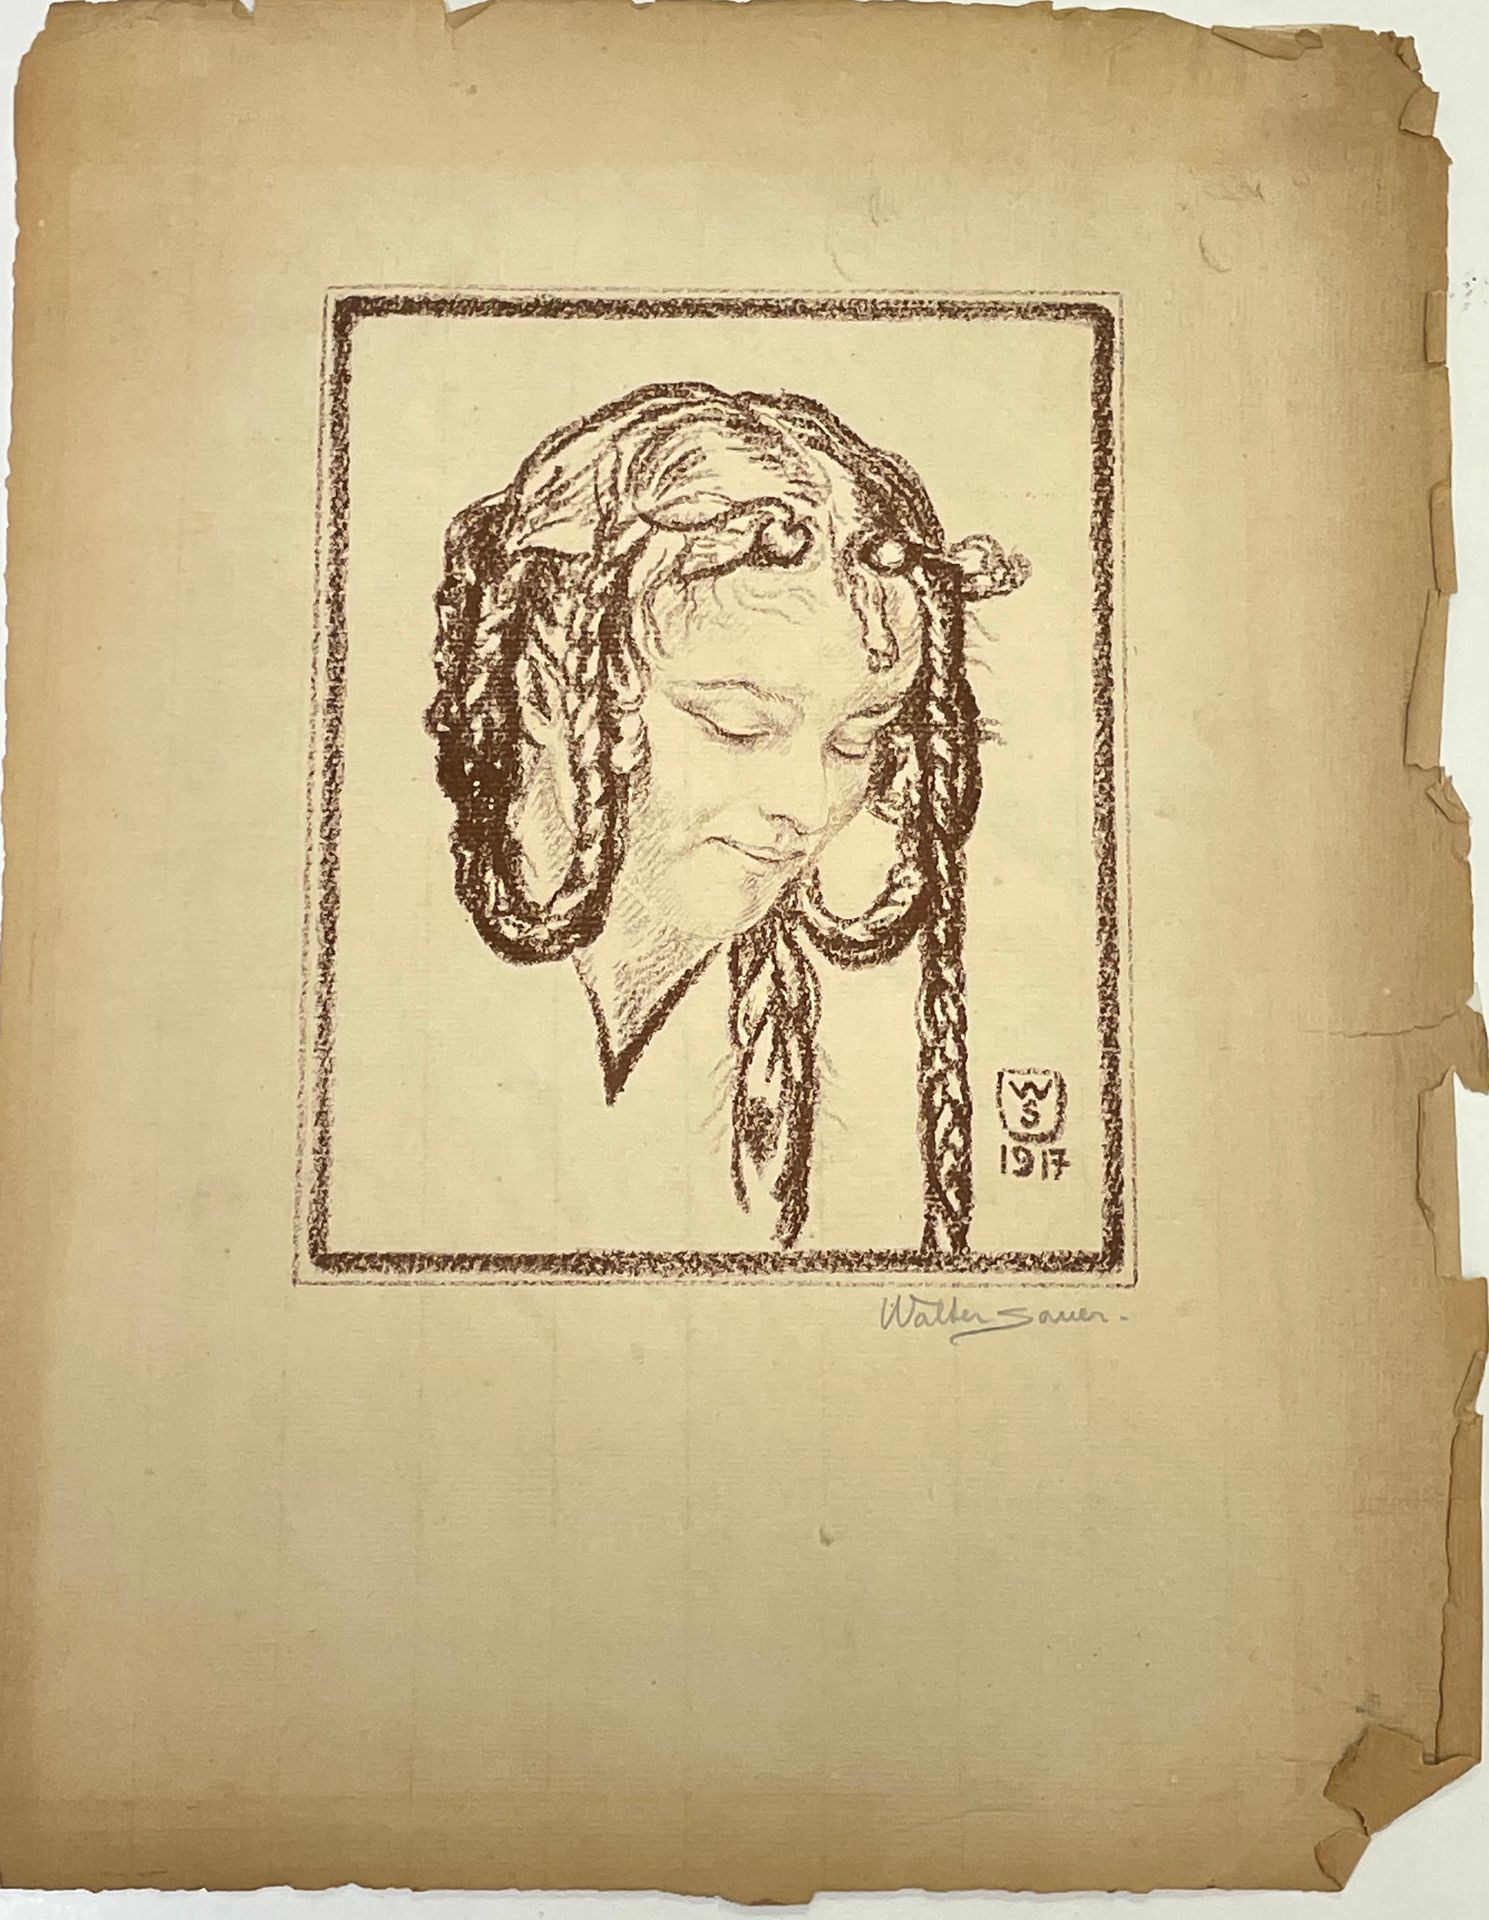 SAUER (Walter). "Jovencita" (1917). Litografía monocromática impresa sobre papel&hellip;